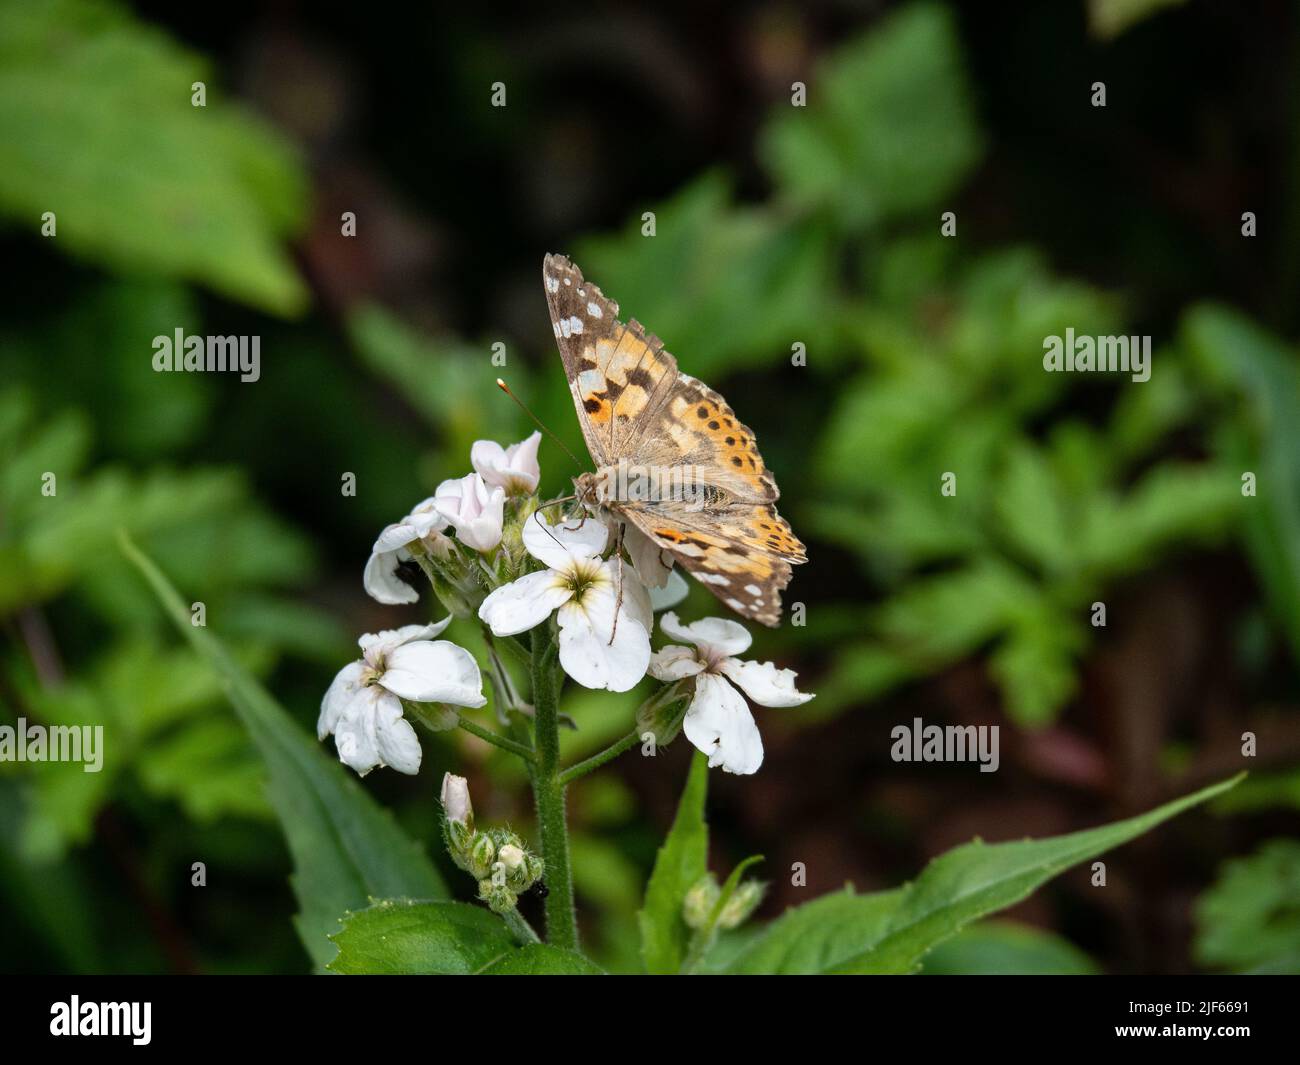 Une dame peinte (Vanessa cardui) butterfly se nourrissant d'une fleur blanche d'honnêteté Banque D'Images